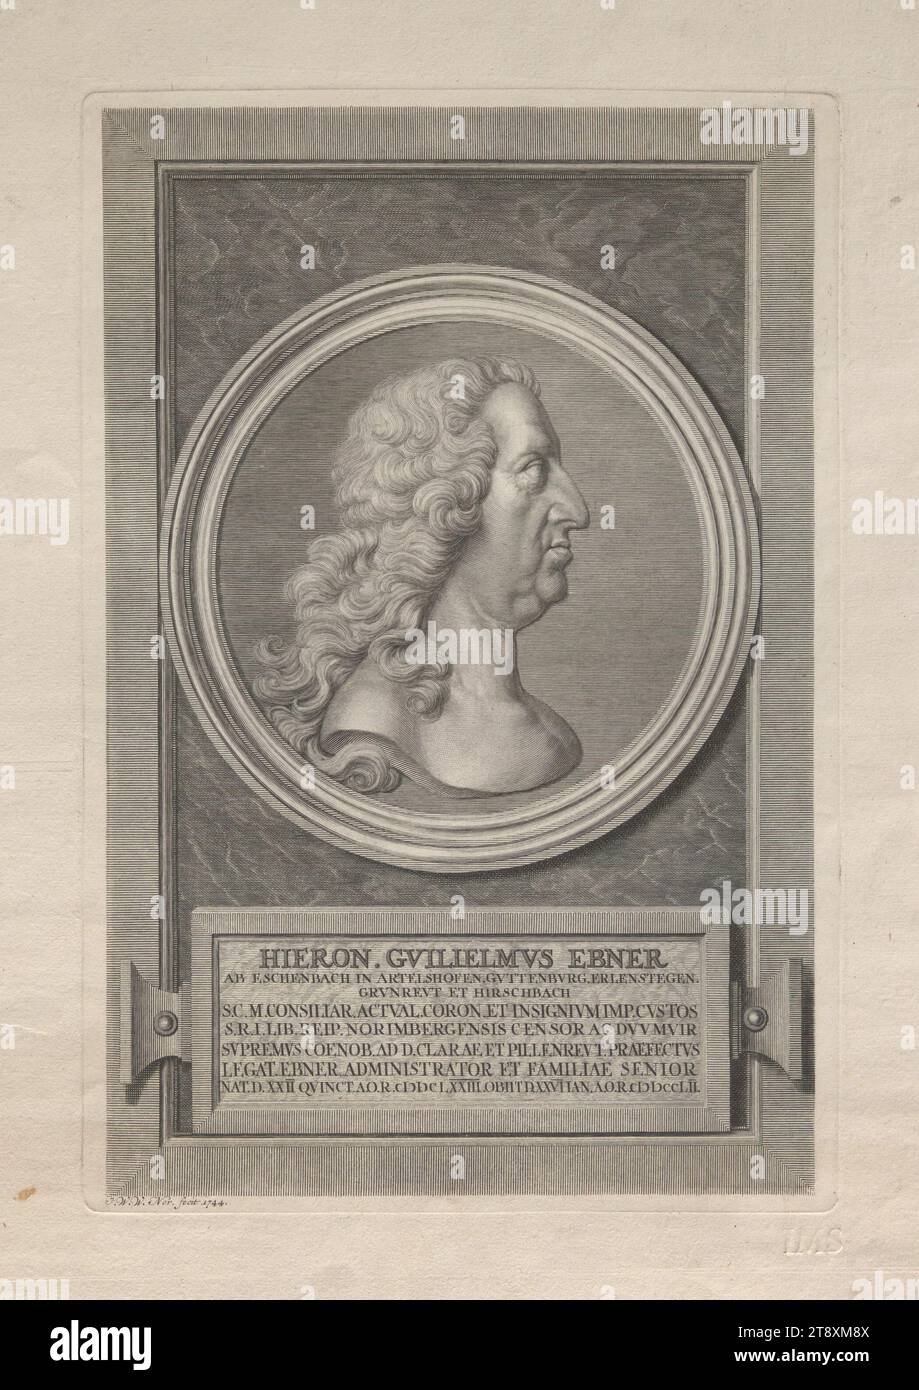 HIERON. GUILIELMUS EBNER AB ESCHENBACH IN ARTELSHOFEN. GUTTENBURG. ERLENSTEGEN. GRUNREUT ET HIRSCHBACH - S.C.M. CONSILIAR (...)', Unknown, 1744, paper, copperplate engraving, height 41.4 cm, width 30.1 cm, plate size 32.8×22.1 cm, Fine Arts, Estate of Constantin von Wurzbach, portrait, man, The Vienna Collection Stock Photo